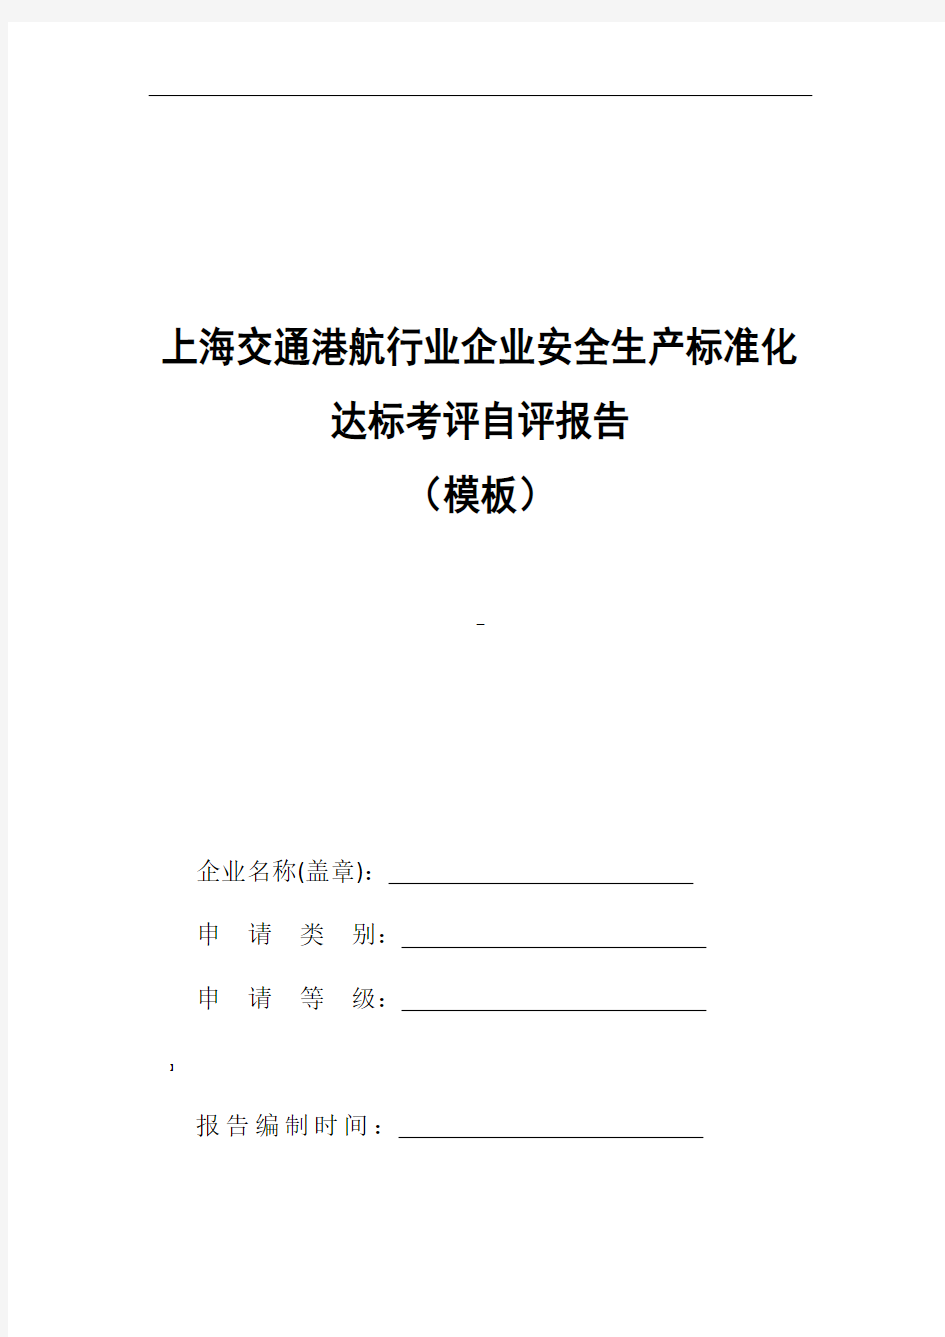 上海交通港航行业安全生产标准化自评报告(模板)